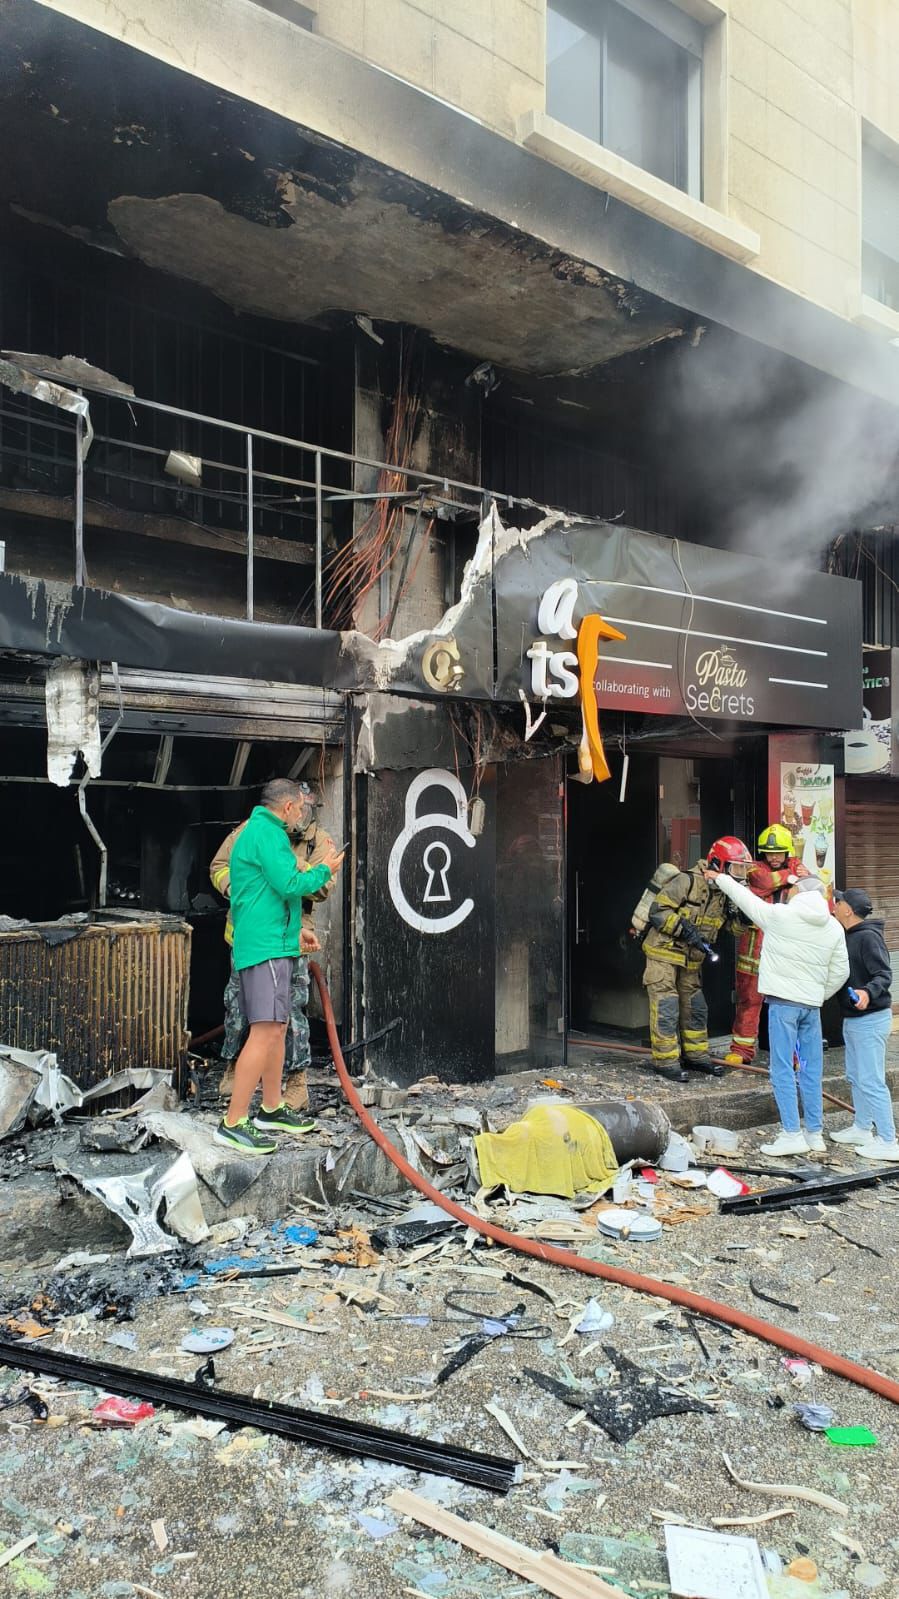 ١٠ ضحايا حتى الساعة في حريق مطعم في بشارة الخوري